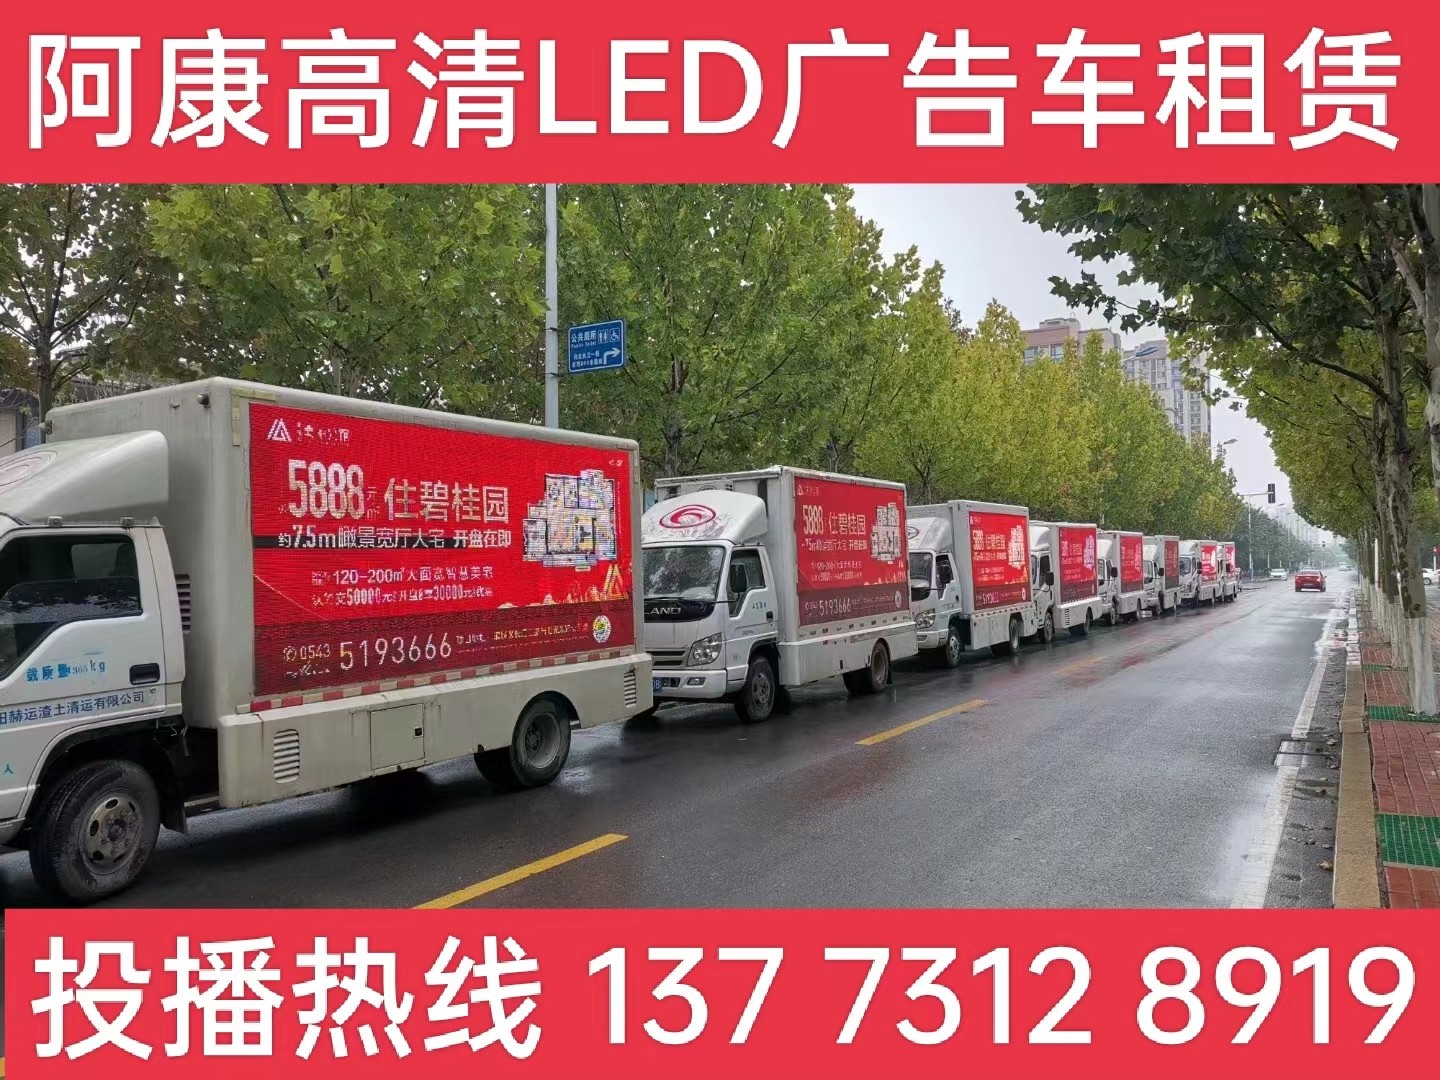 丹阳宣传车租赁公司-楼盘LED广告车投放